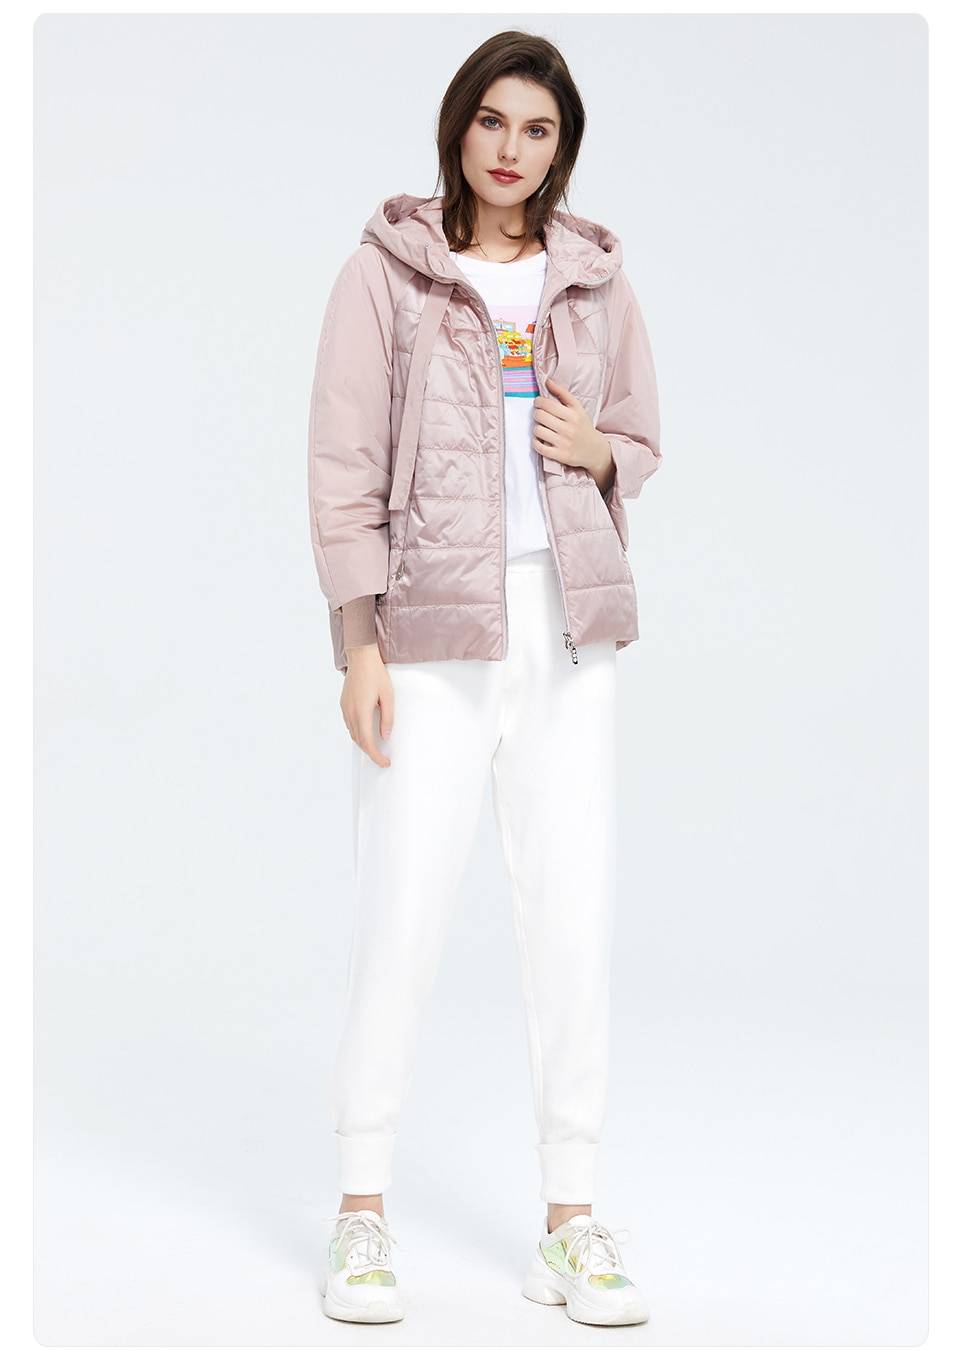 Elegant Short Warm Thin Coat Jacket | Uniqistic.com